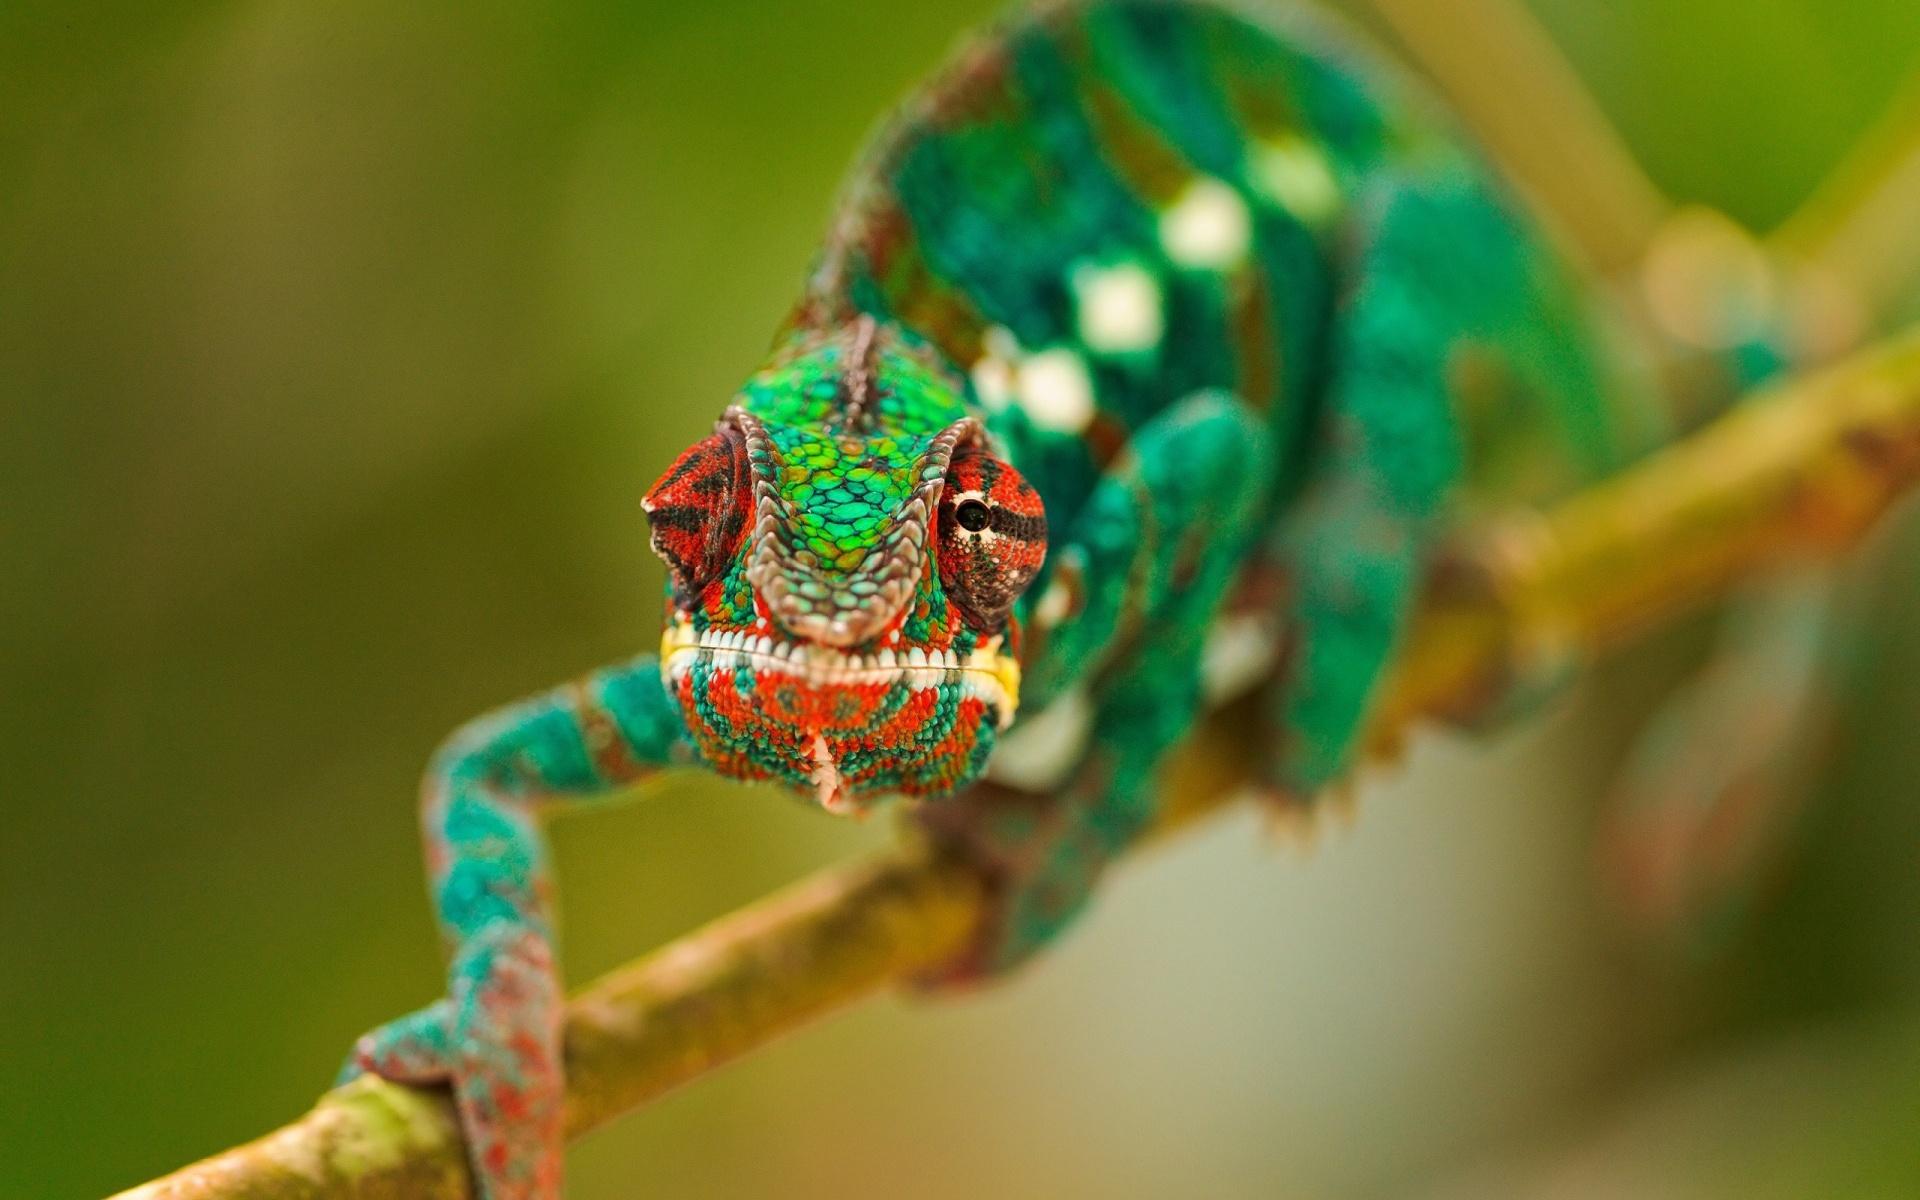 Wallpaper Amphibians, a chameleon 1920x1200 HD Picture, Image